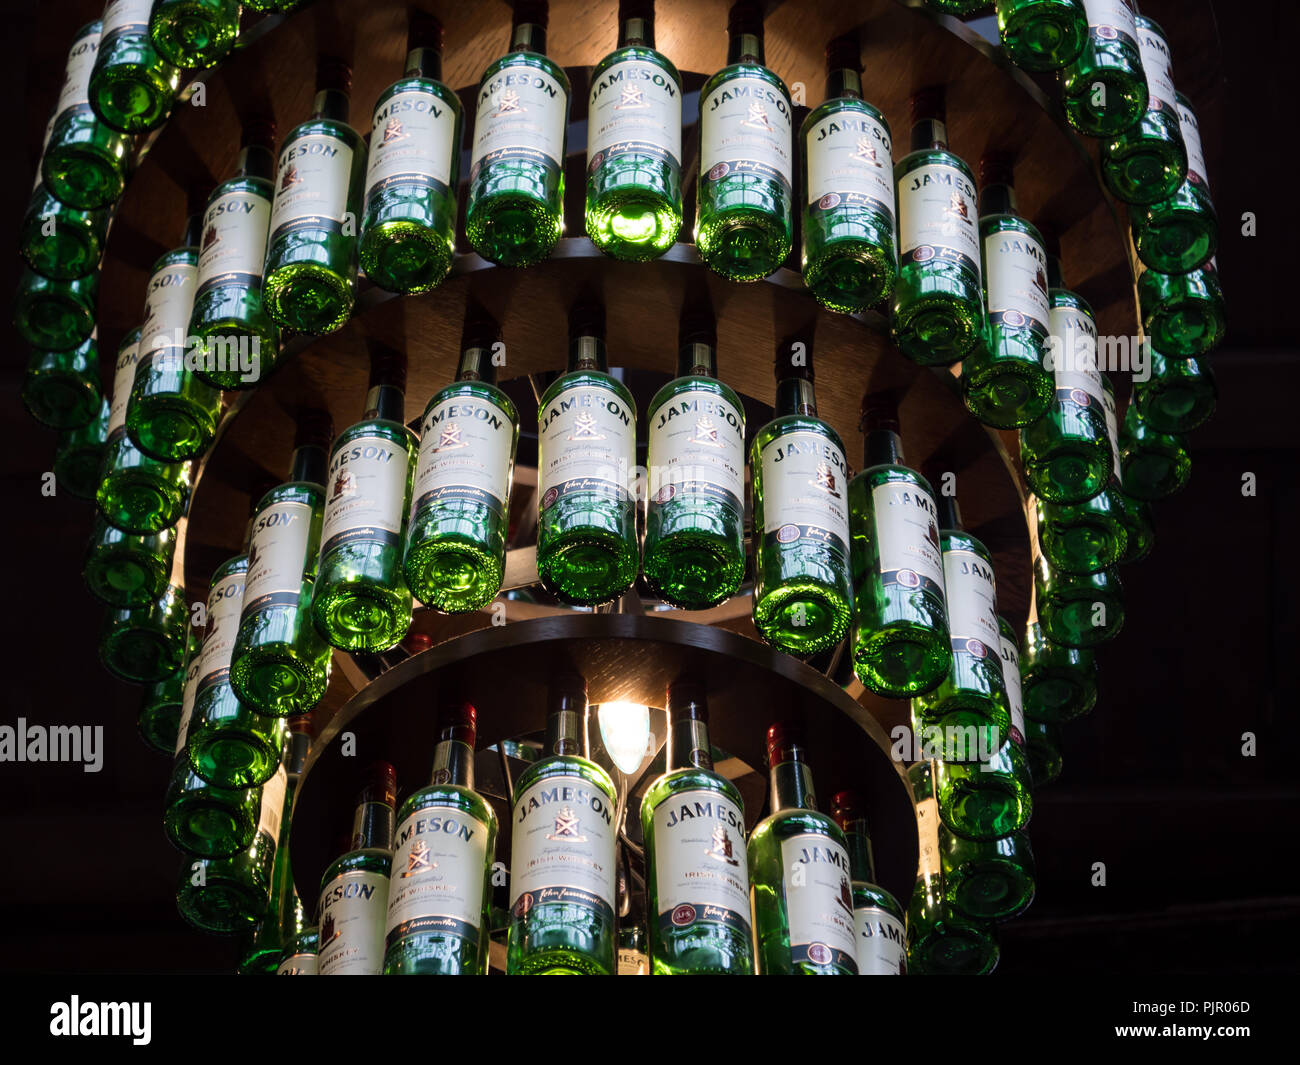 Destilería Jameson, es uno de los famosos Irish whiskey productores Foto de stock